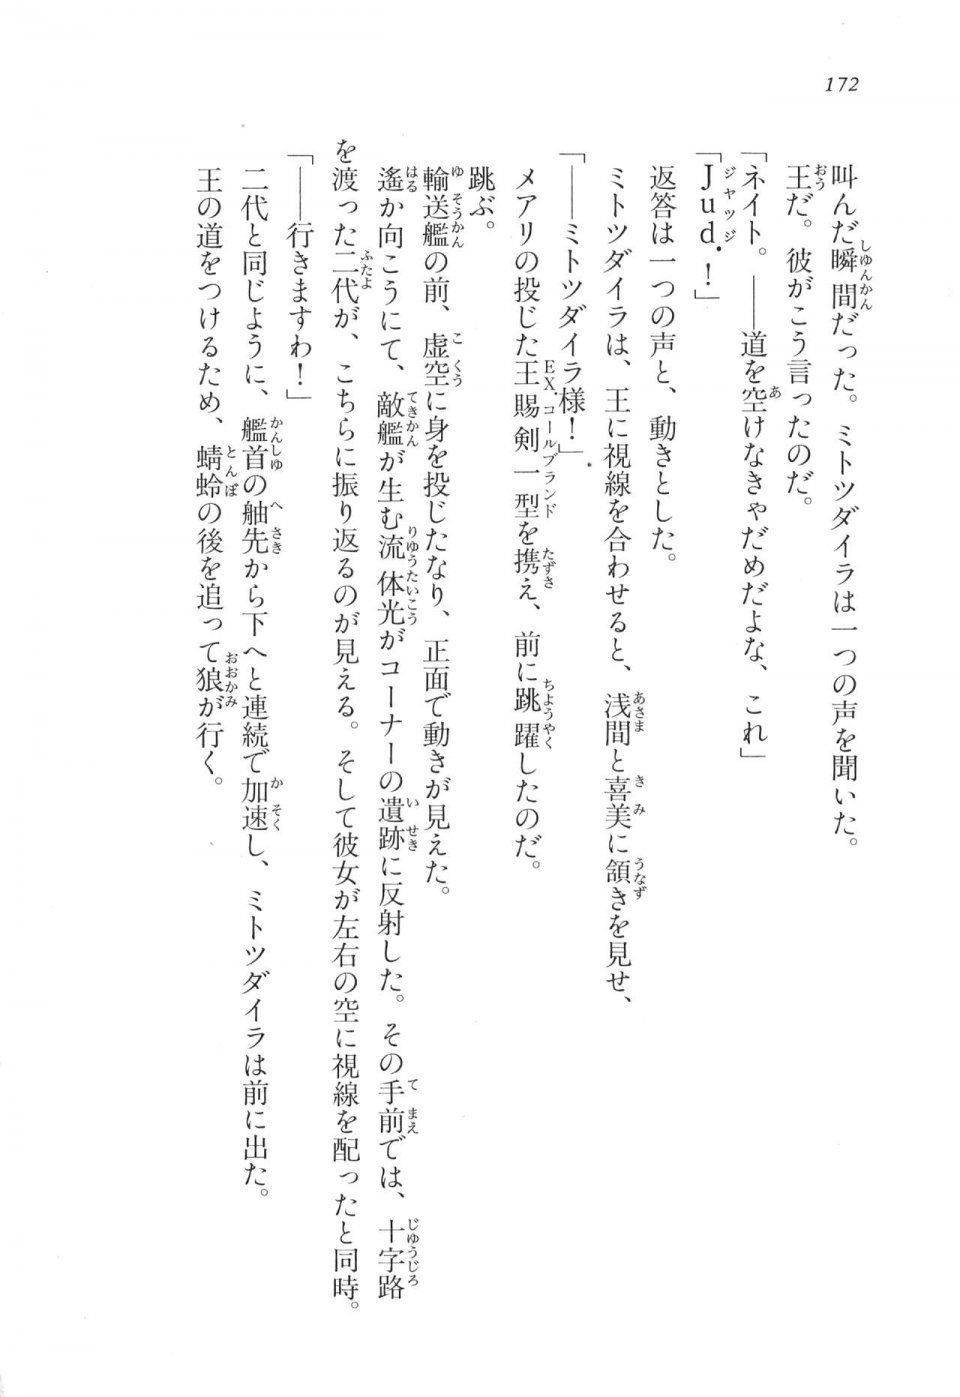 Kyoukai Senjou no Horizon LN Vol 17(7B) - Photo #172